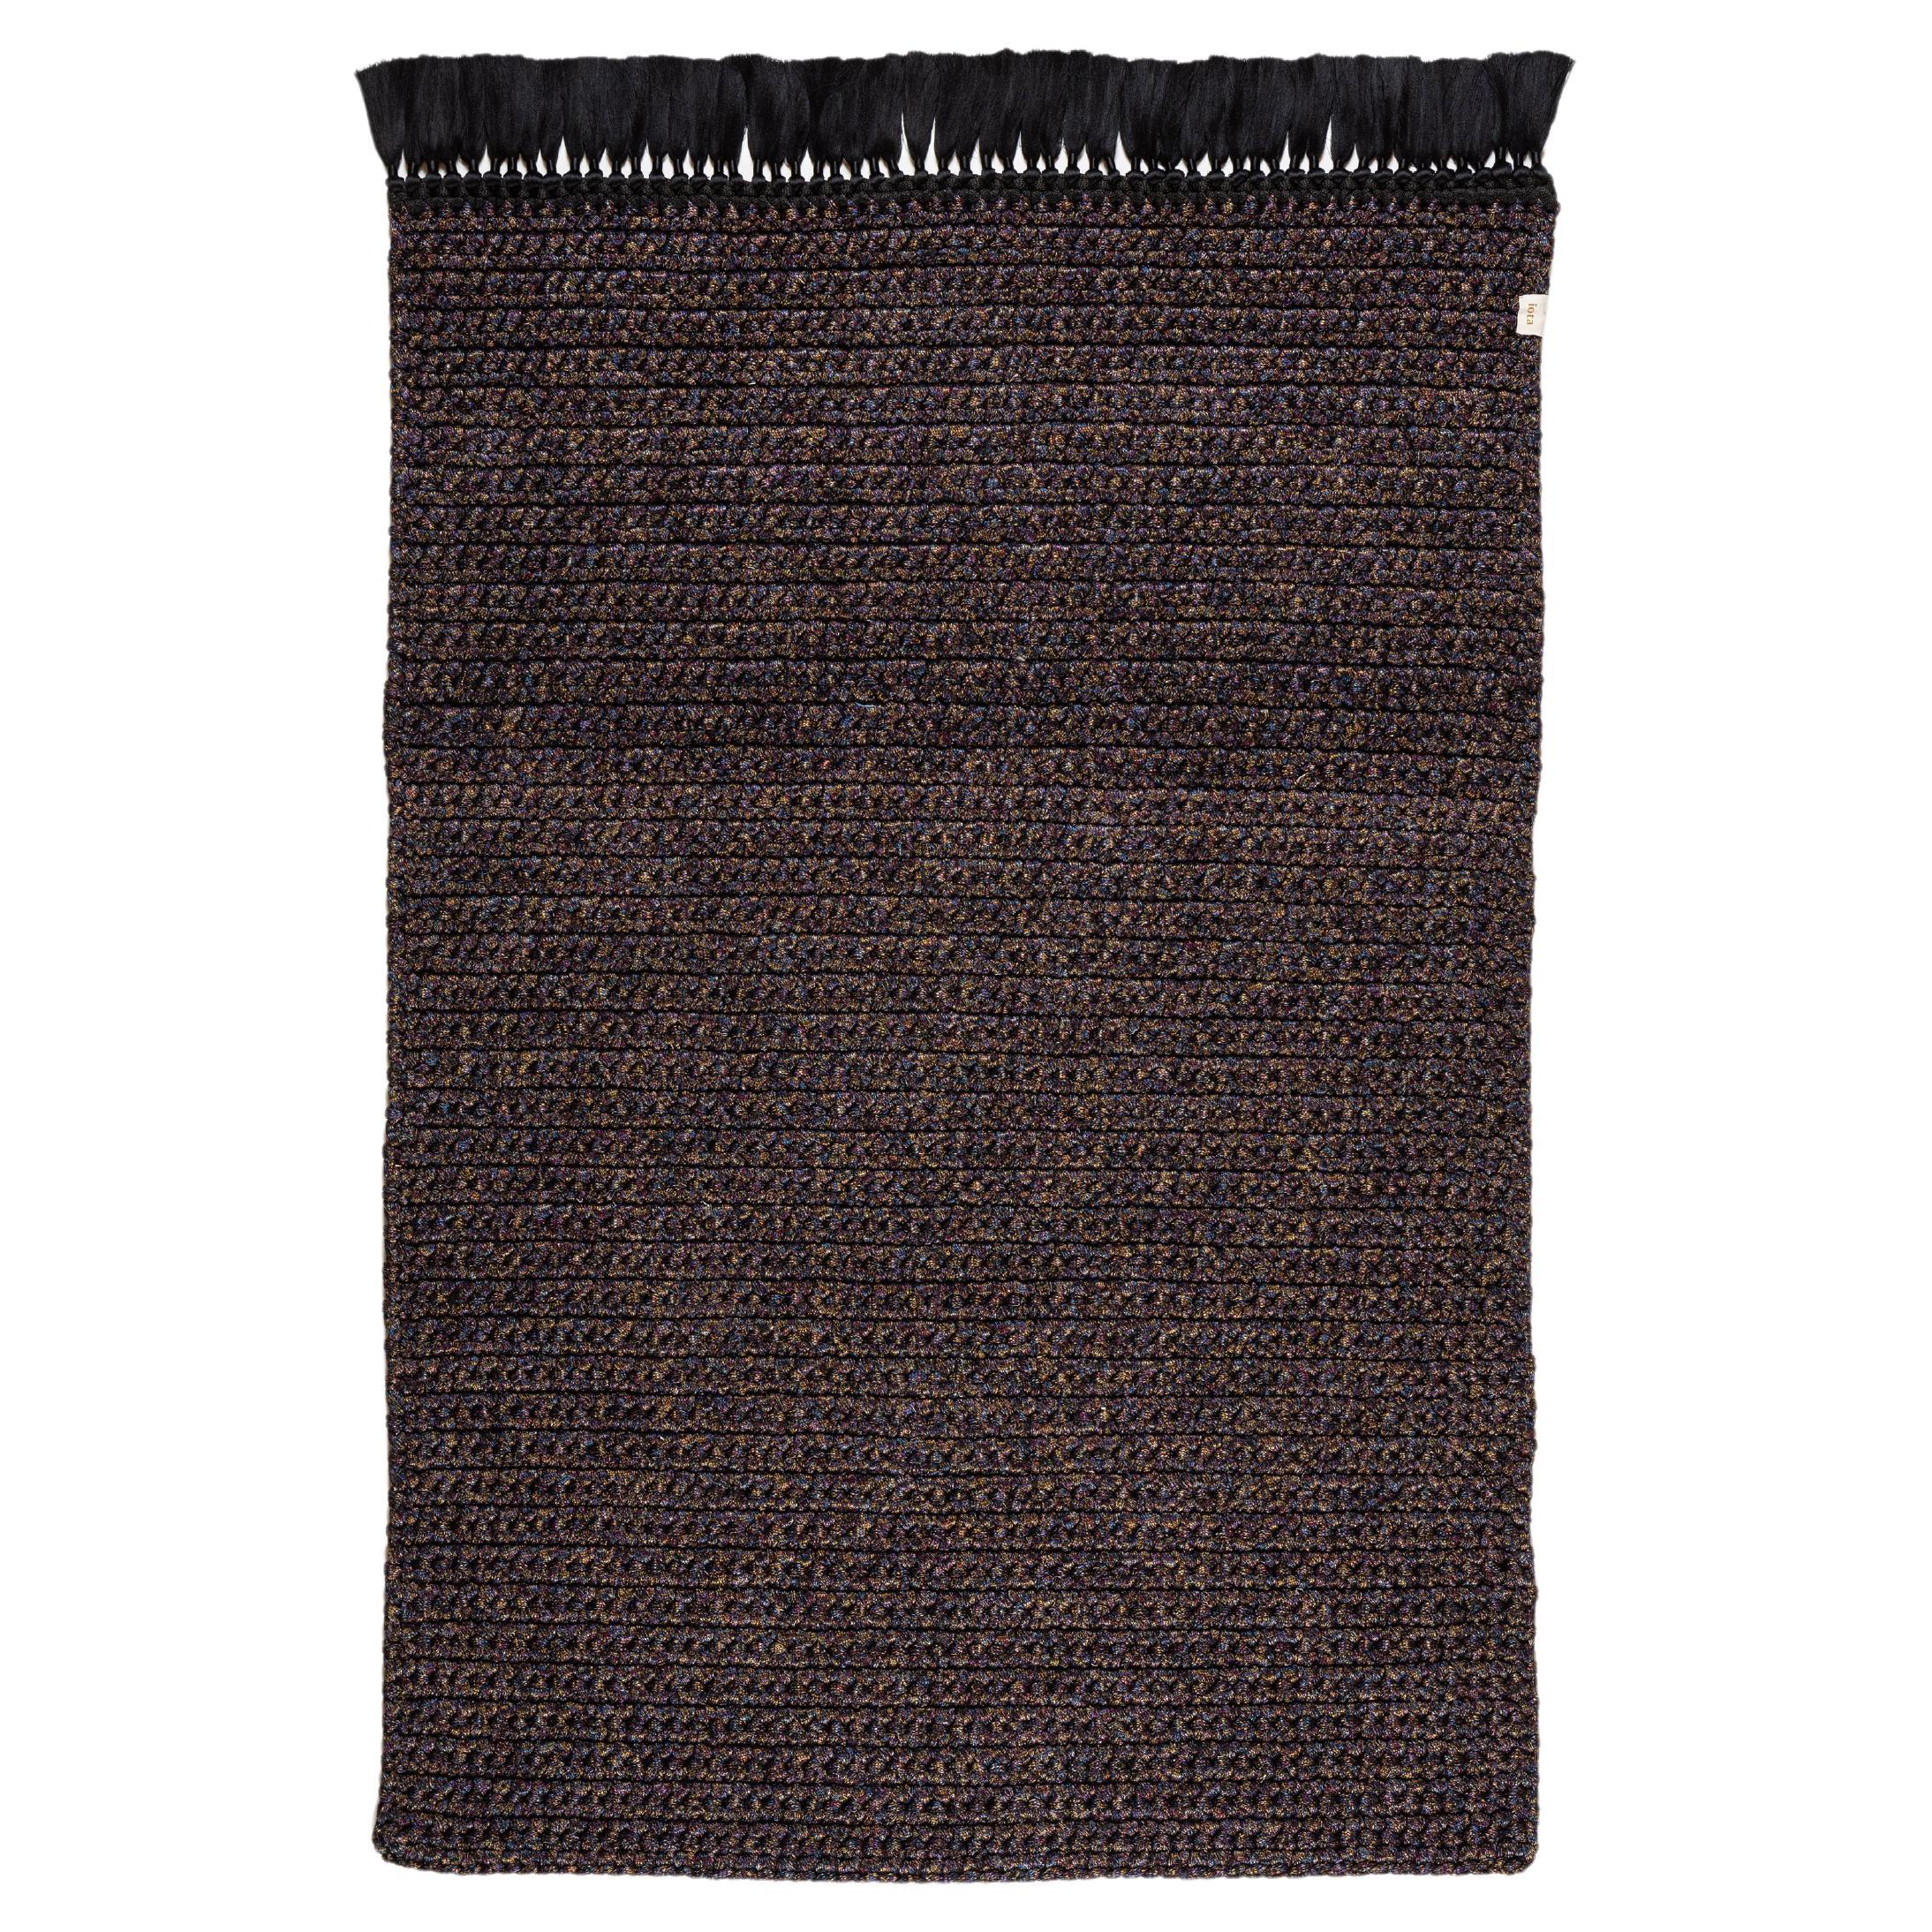 Dicker Teppich 120X200 cm  Handgefertigte schwarze, farbenfrohe, rostfarbene Häkelarbeit von iota